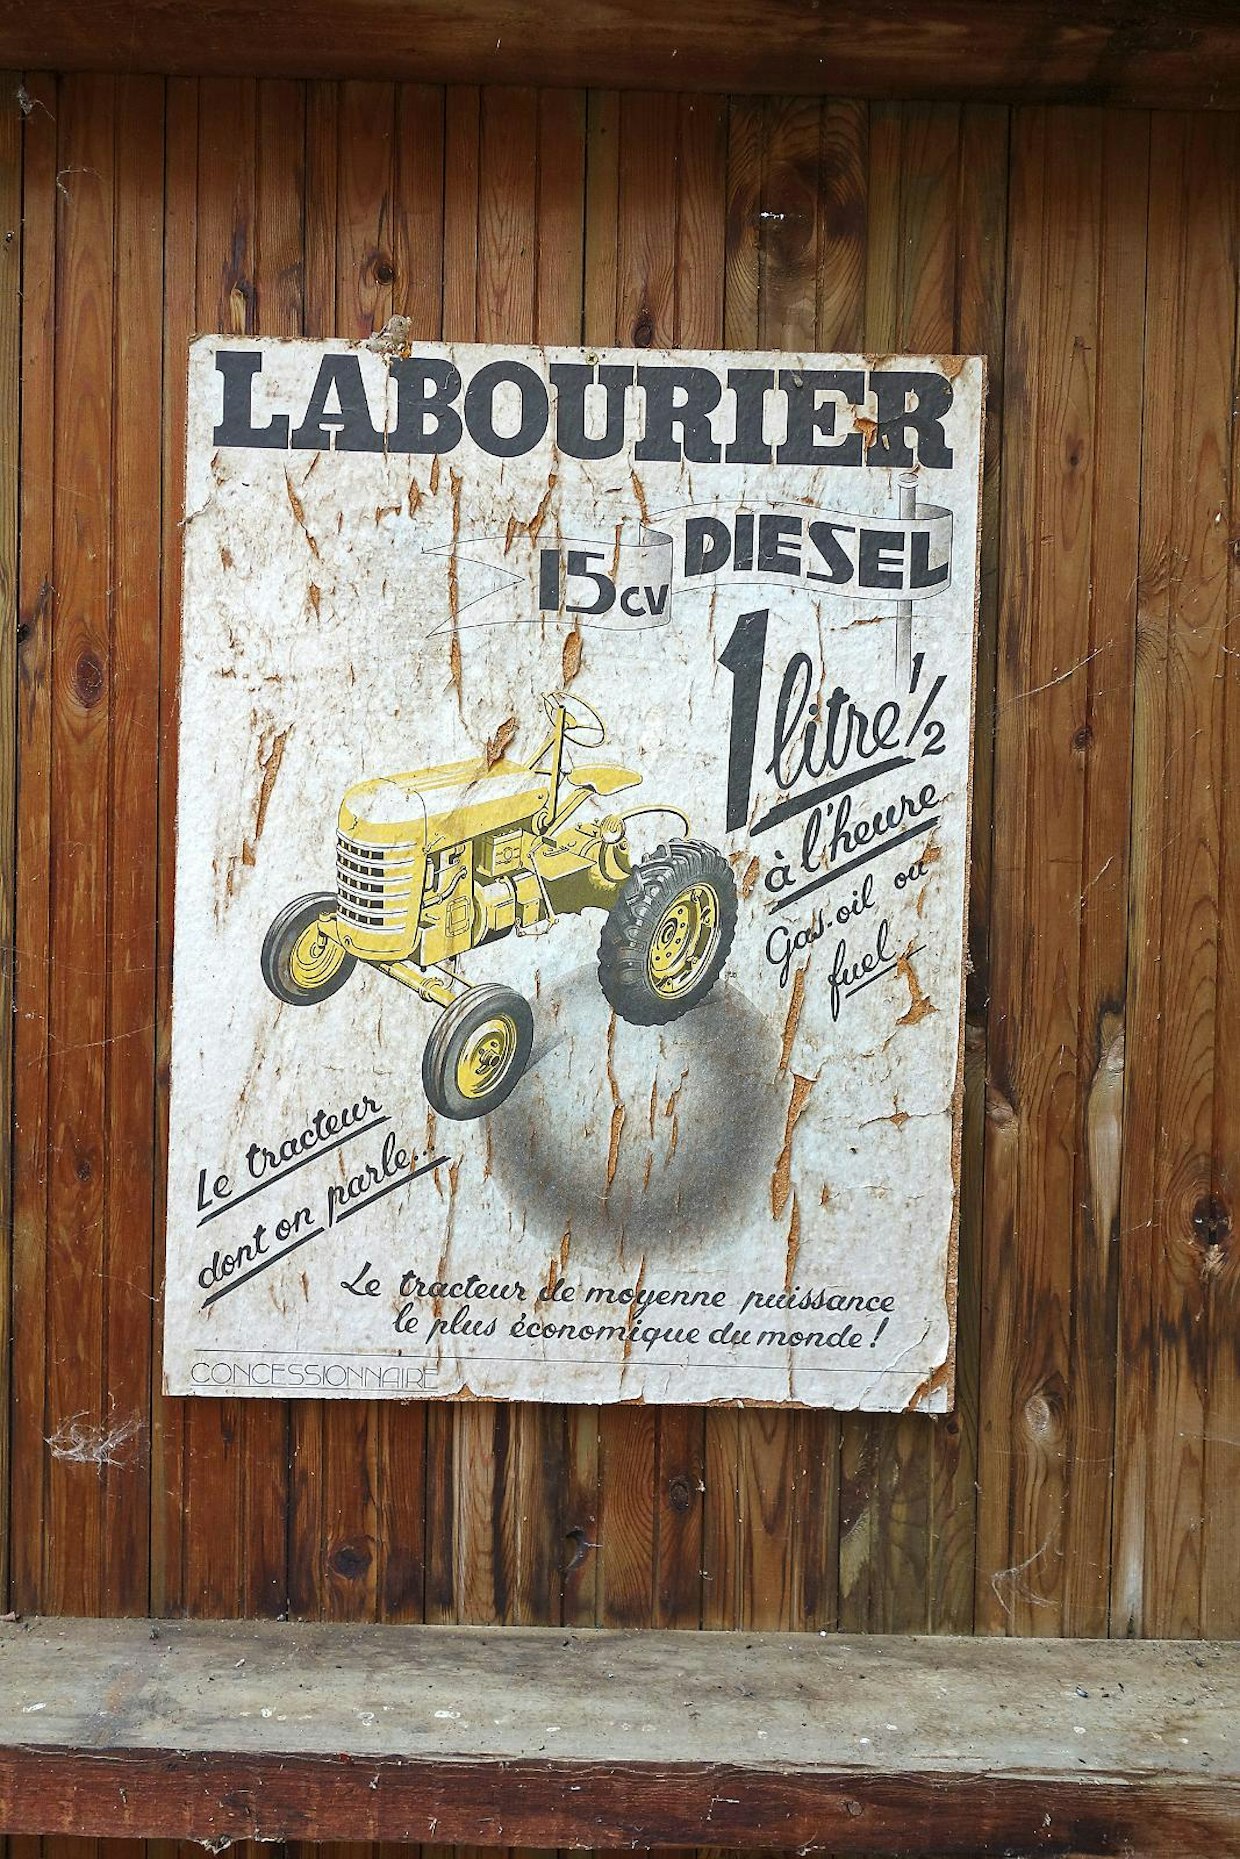 Museossa on kymmenittäin vanhoja mainostauluja. Labourier on vanha ranskalainen yritys, joka jo sodan aikana näki mahdollisuutensa traktorinvalmistuksessa. 1950-luvulla Labourier valmisti lähinnä pieniä15–70 hevosvoimaisia traktoreita. Yleisestä linjasta poiketen Labourierin traktorinvalmistus päättyi vasta vuonna 1978.